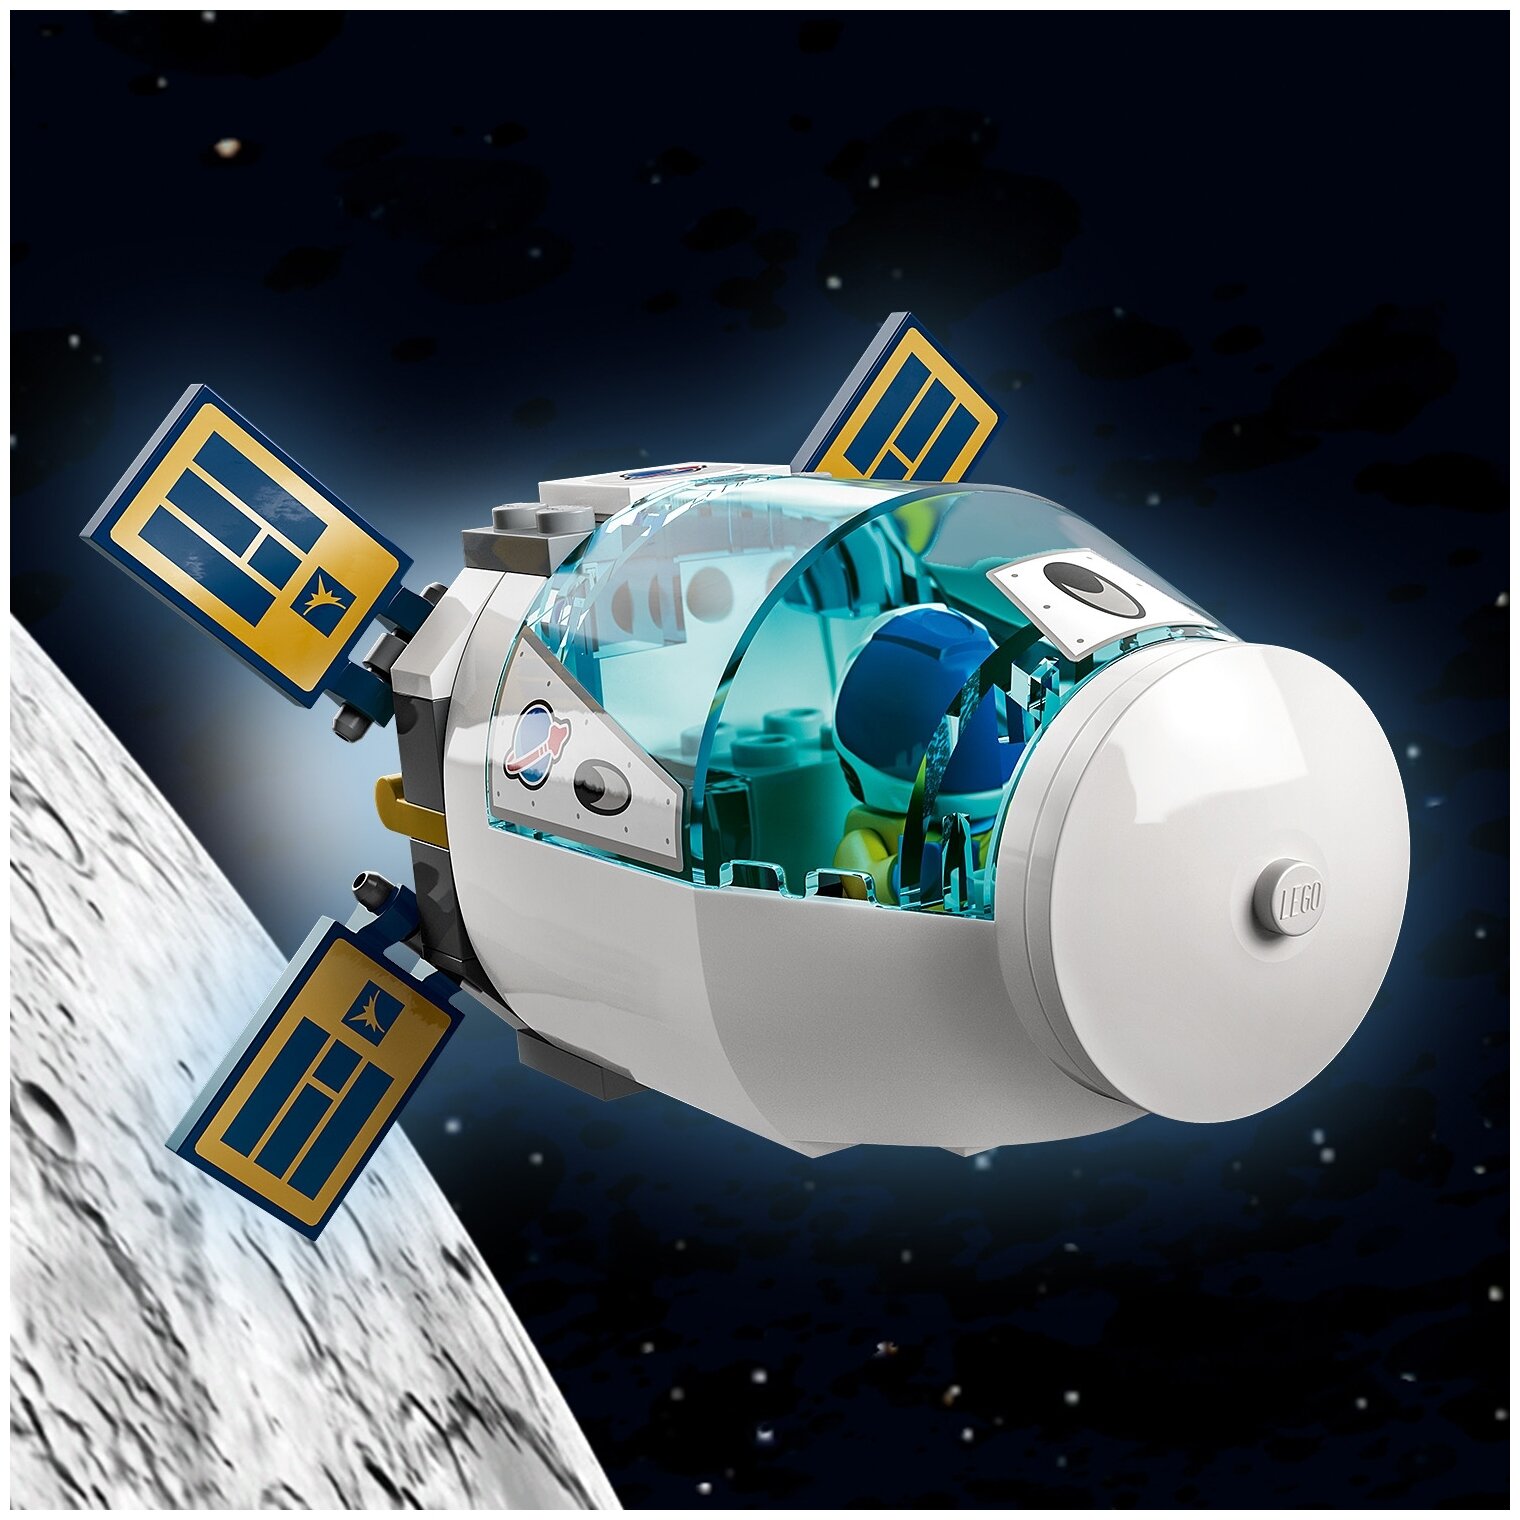 Конструктор LEGO Лунная космическая станция 60349 Казахстан